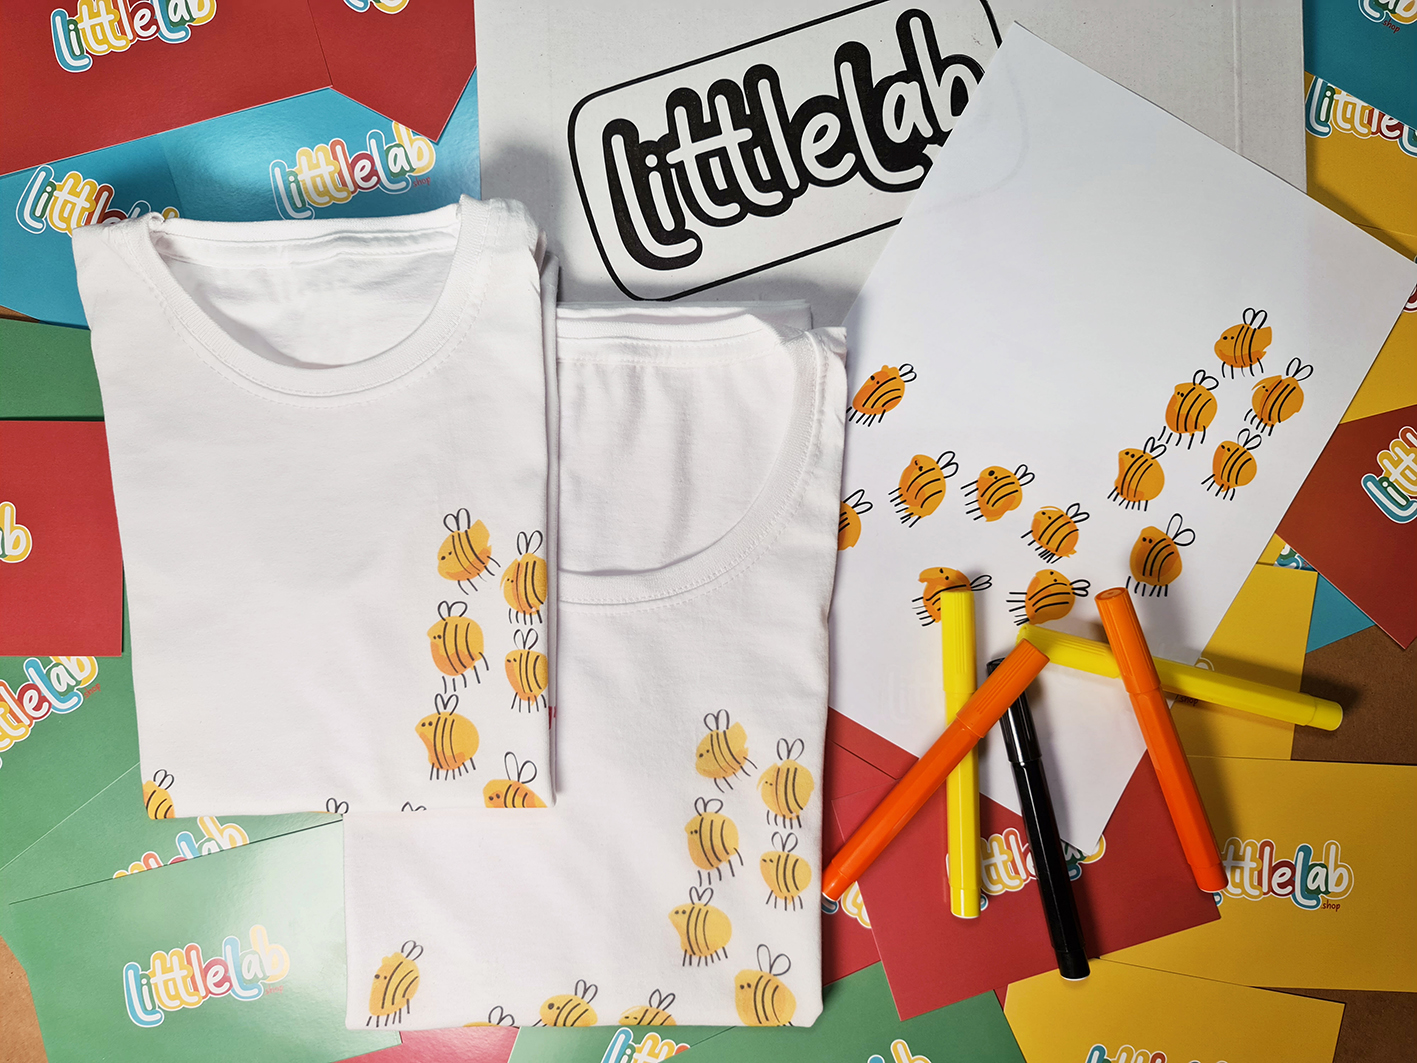 Nasce LittleLab la nuova linea moda realizzata dai piccoli designer